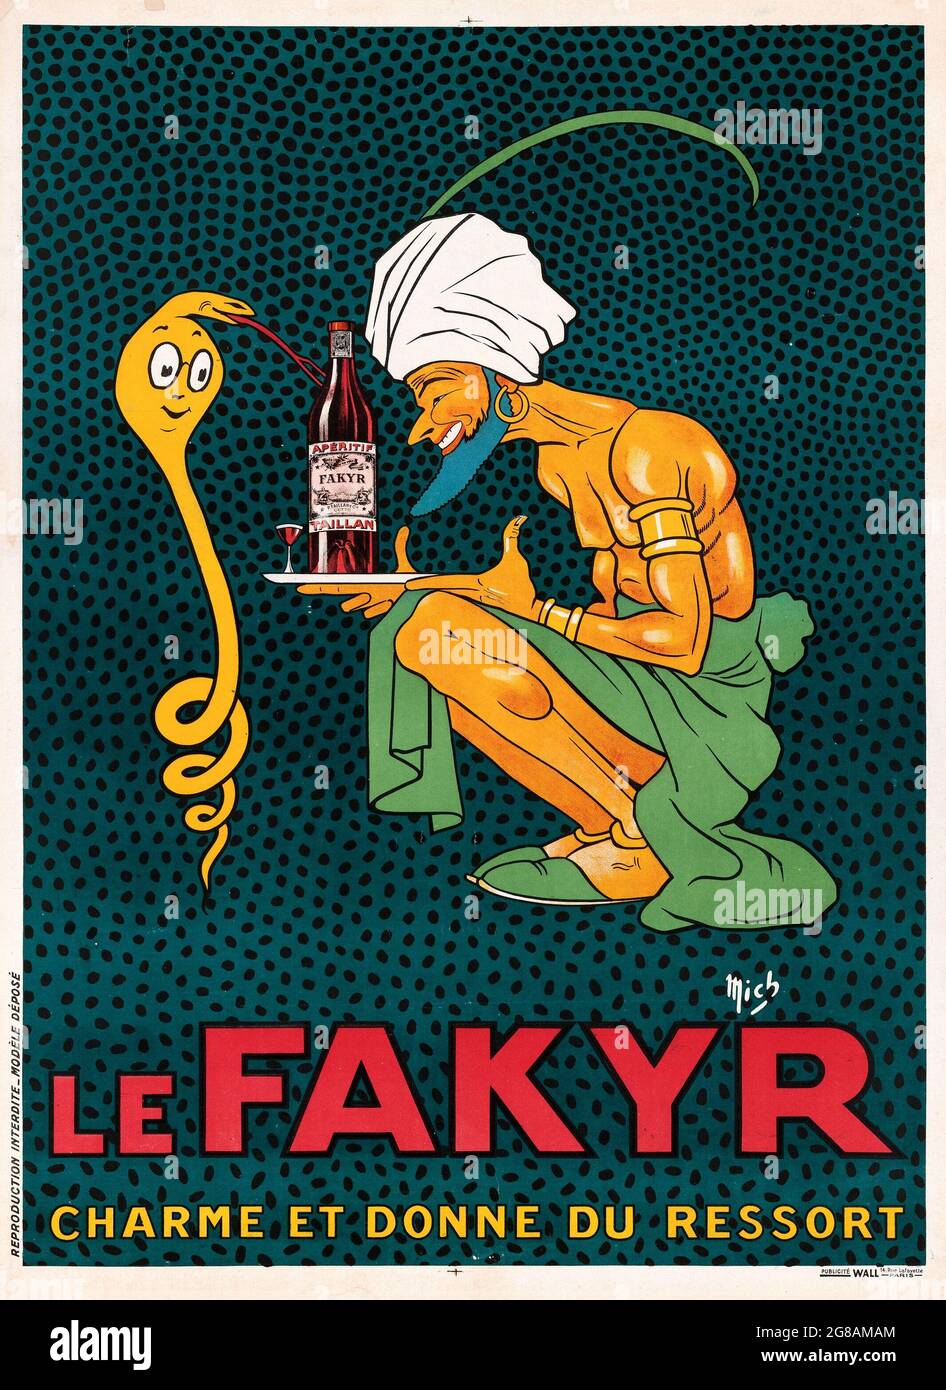 Le Fakyr. Charme et Donne du Ressort. Kunstwerke von MICHEL 'mich' LIEBEAUX. Vintage-Werbung für Alkohol. Ein Fakire, das eine Kobra-Schlange anzaubert. 1921. Stockfoto